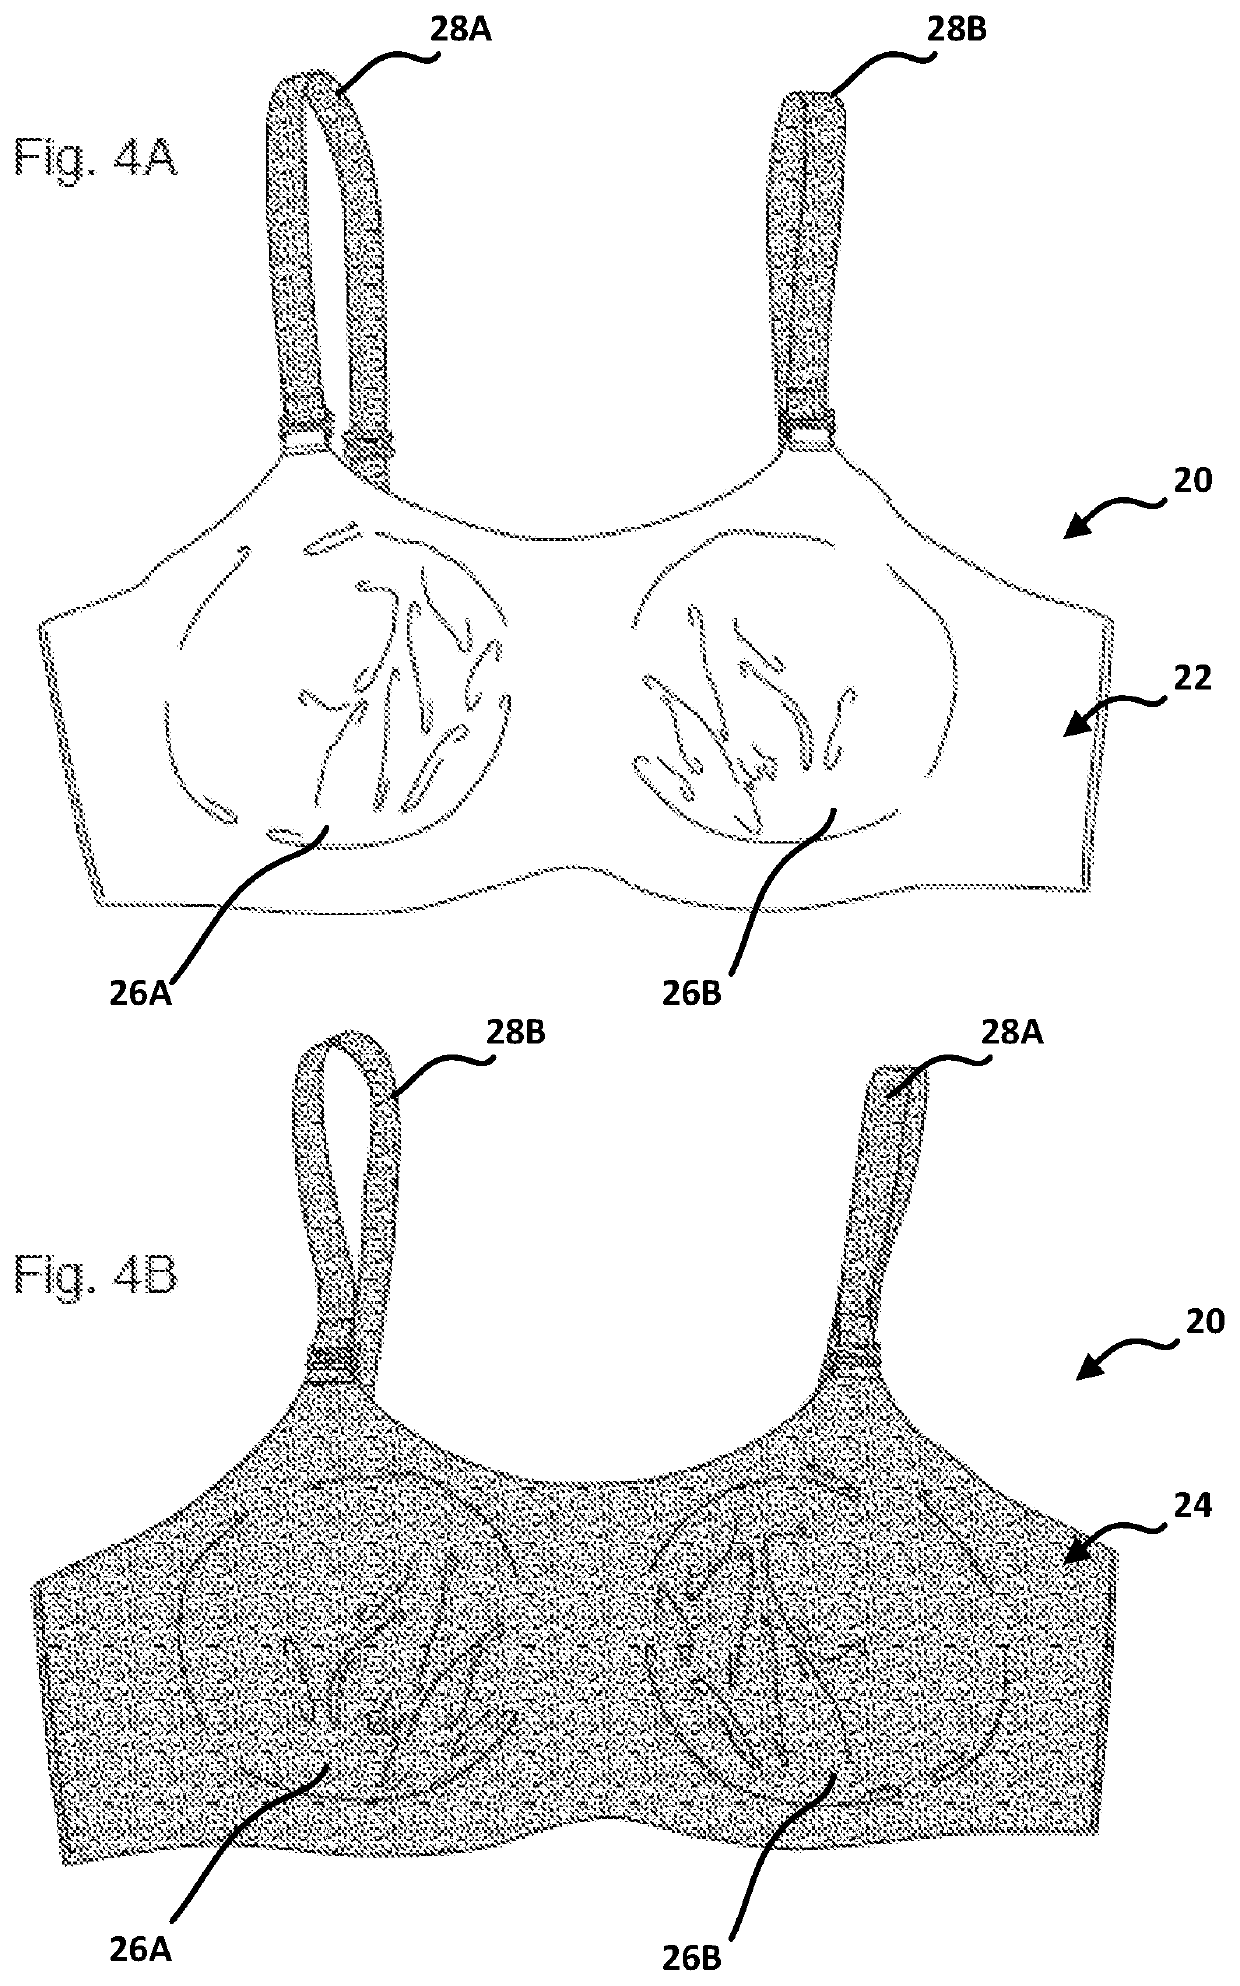 Reversible upper-body support garment